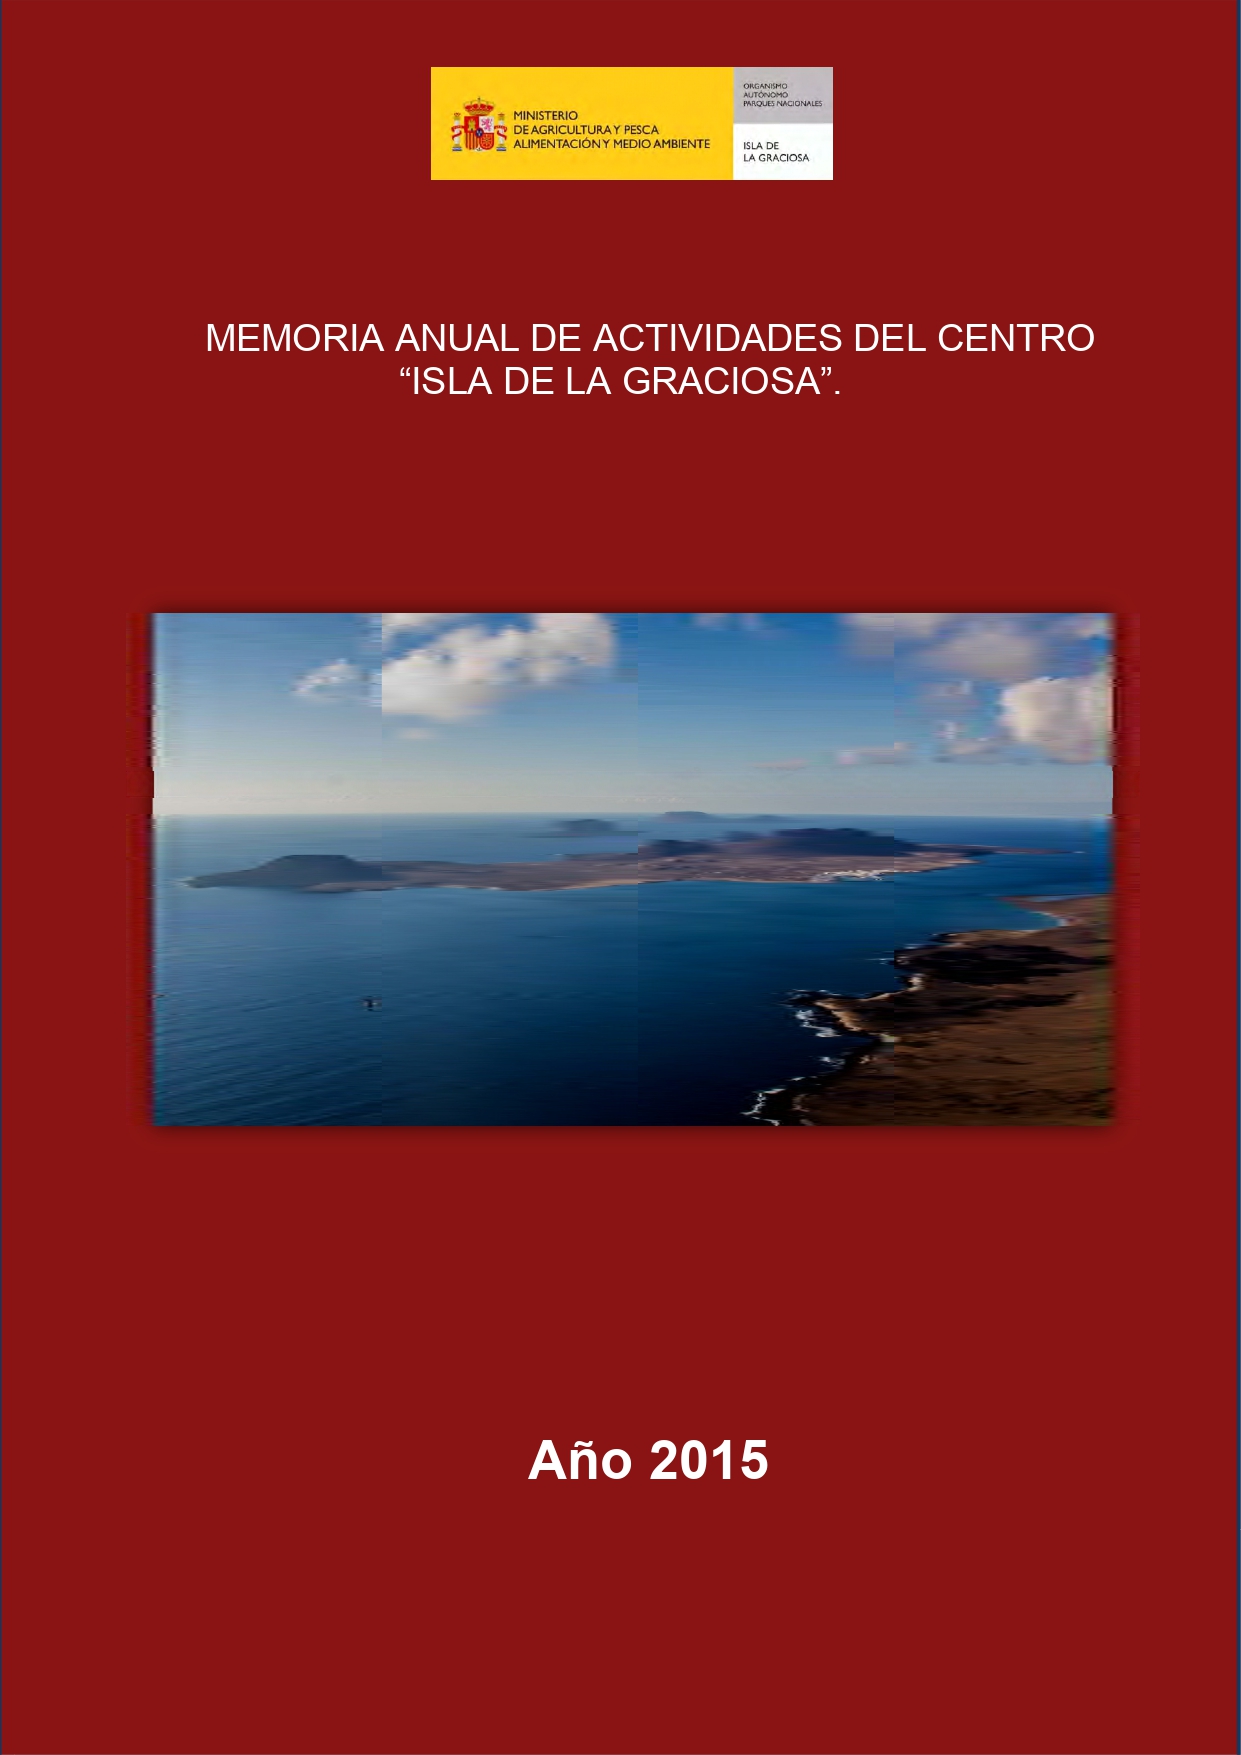 Memoria anual de actividades del centro 'Isla de La Graciosa' (2015)